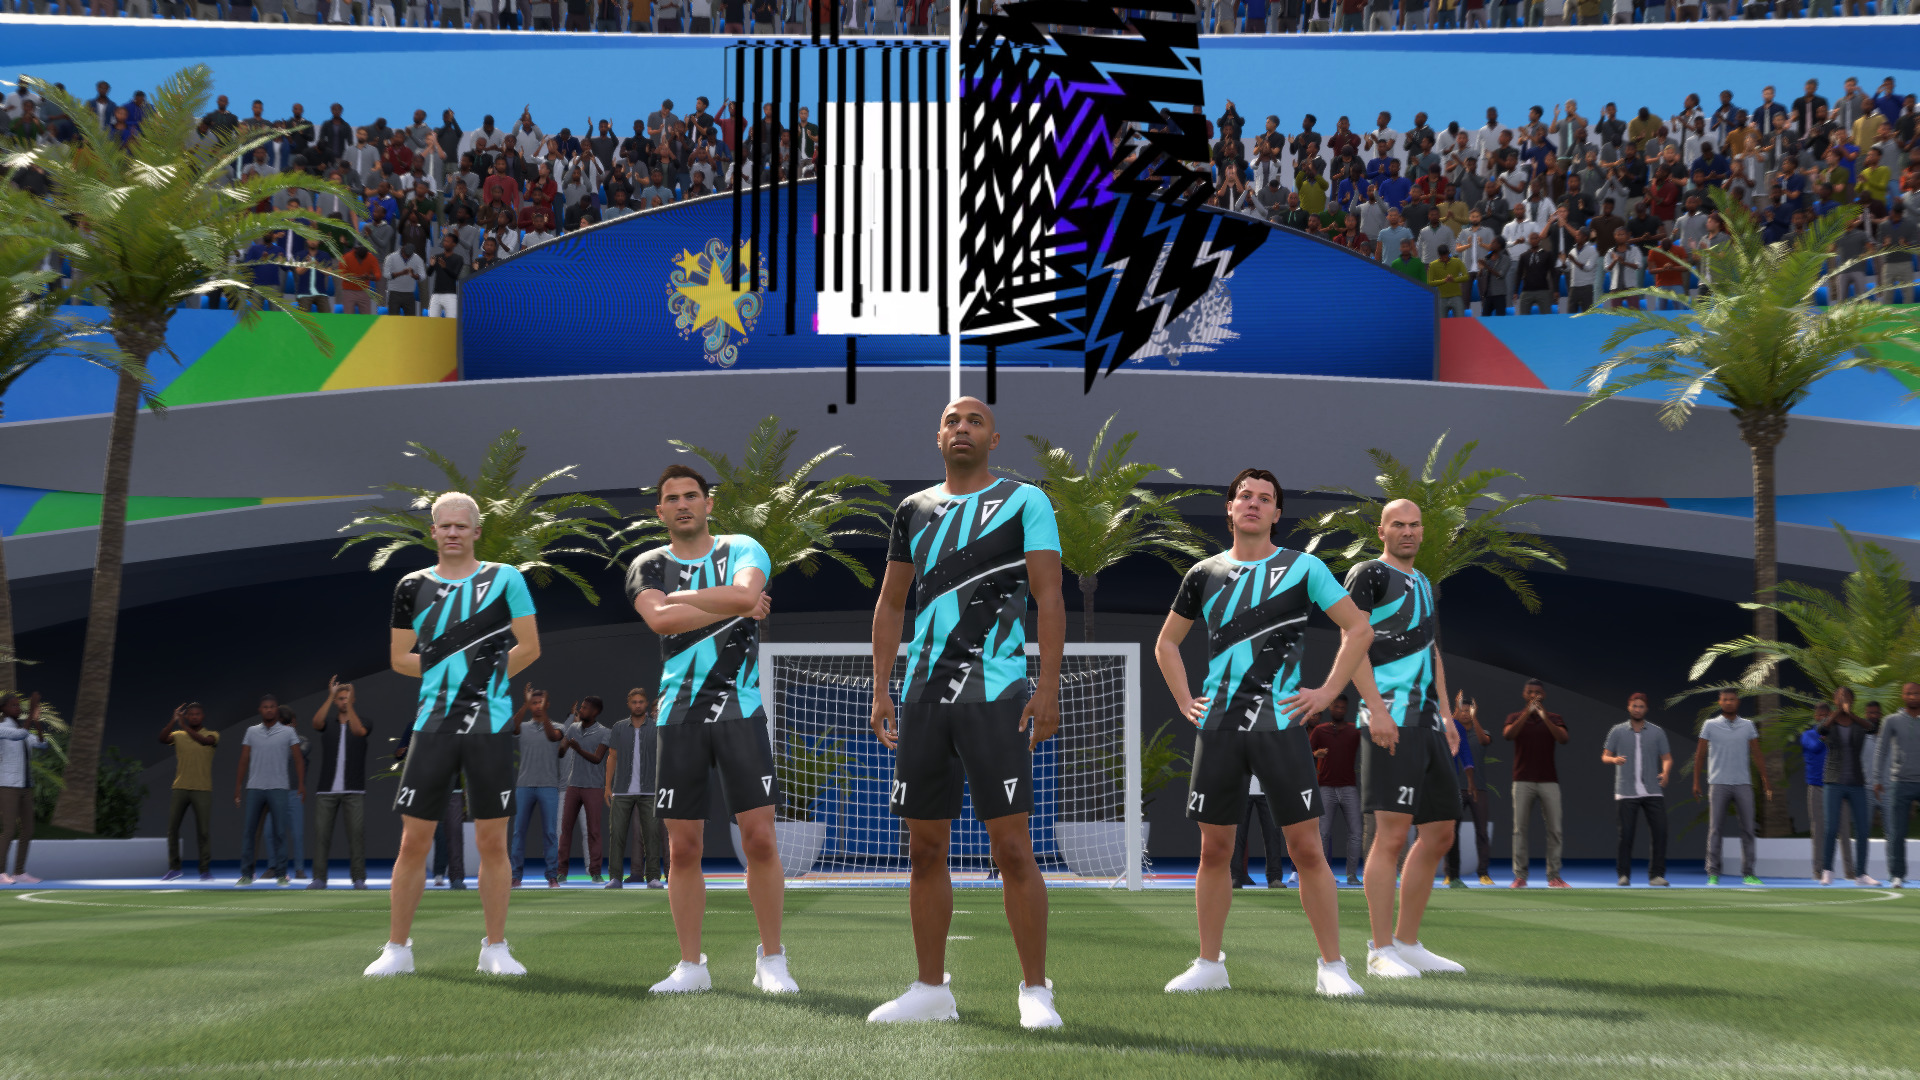 Не прорыв, но все еще увлекательный футбольный симулятор: Обзор FIFA 21